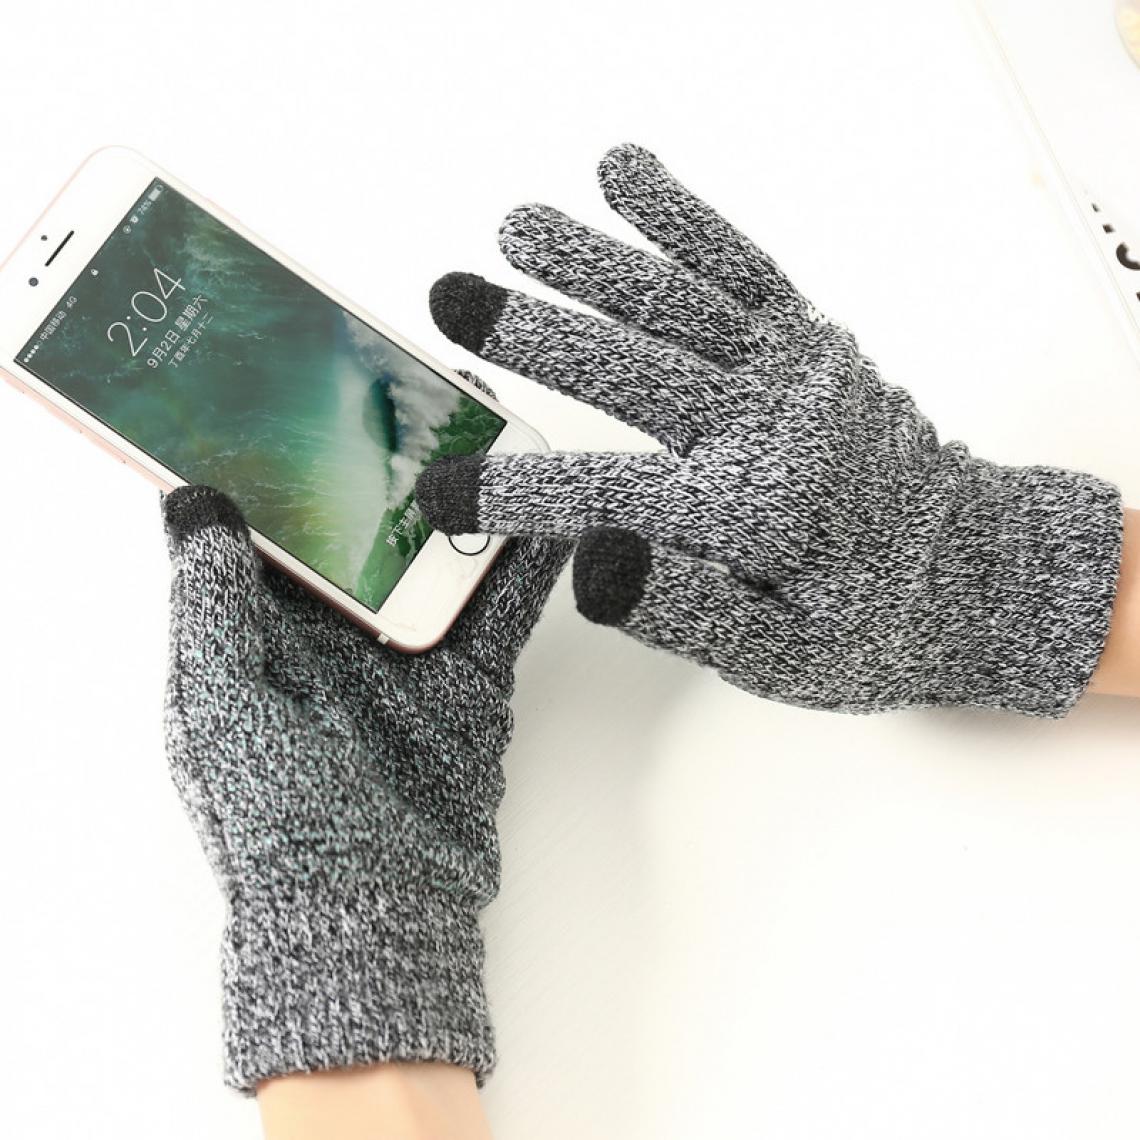 Shot - Gants Homme tactiles pour SAMSUNG Galaxy NOTE 10 Smartphone Taille M 3 doigts Hiver (GRIS) - Autres accessoires smartphone